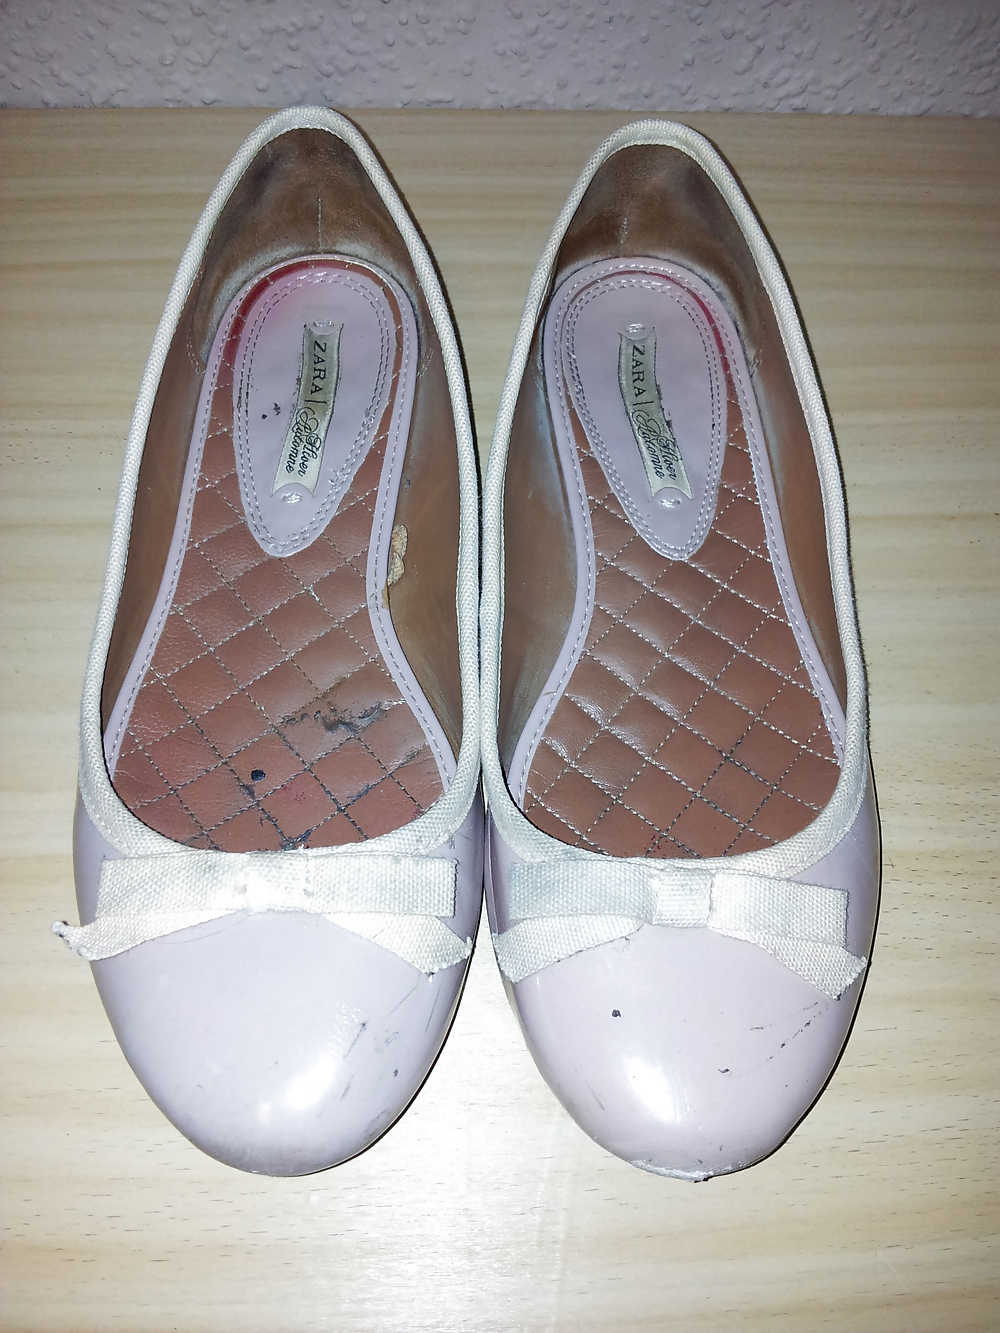 Wifes Bien Usés Ballerines Manquent Nu Flats Shoes2 #19093492